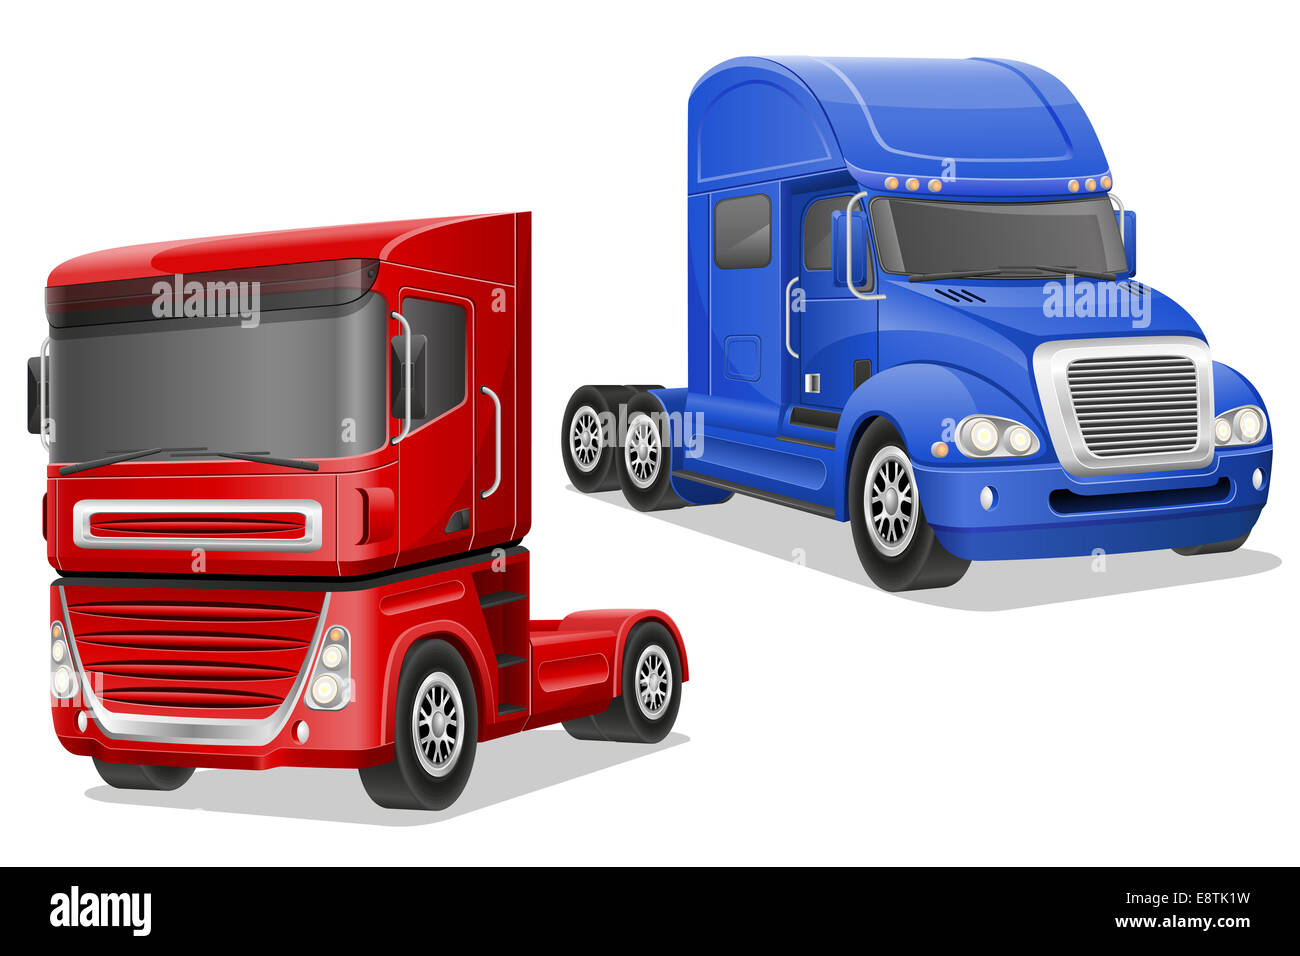 Grand bleu et rouge camions illustration isolé sur fond blanc Banque D'Images